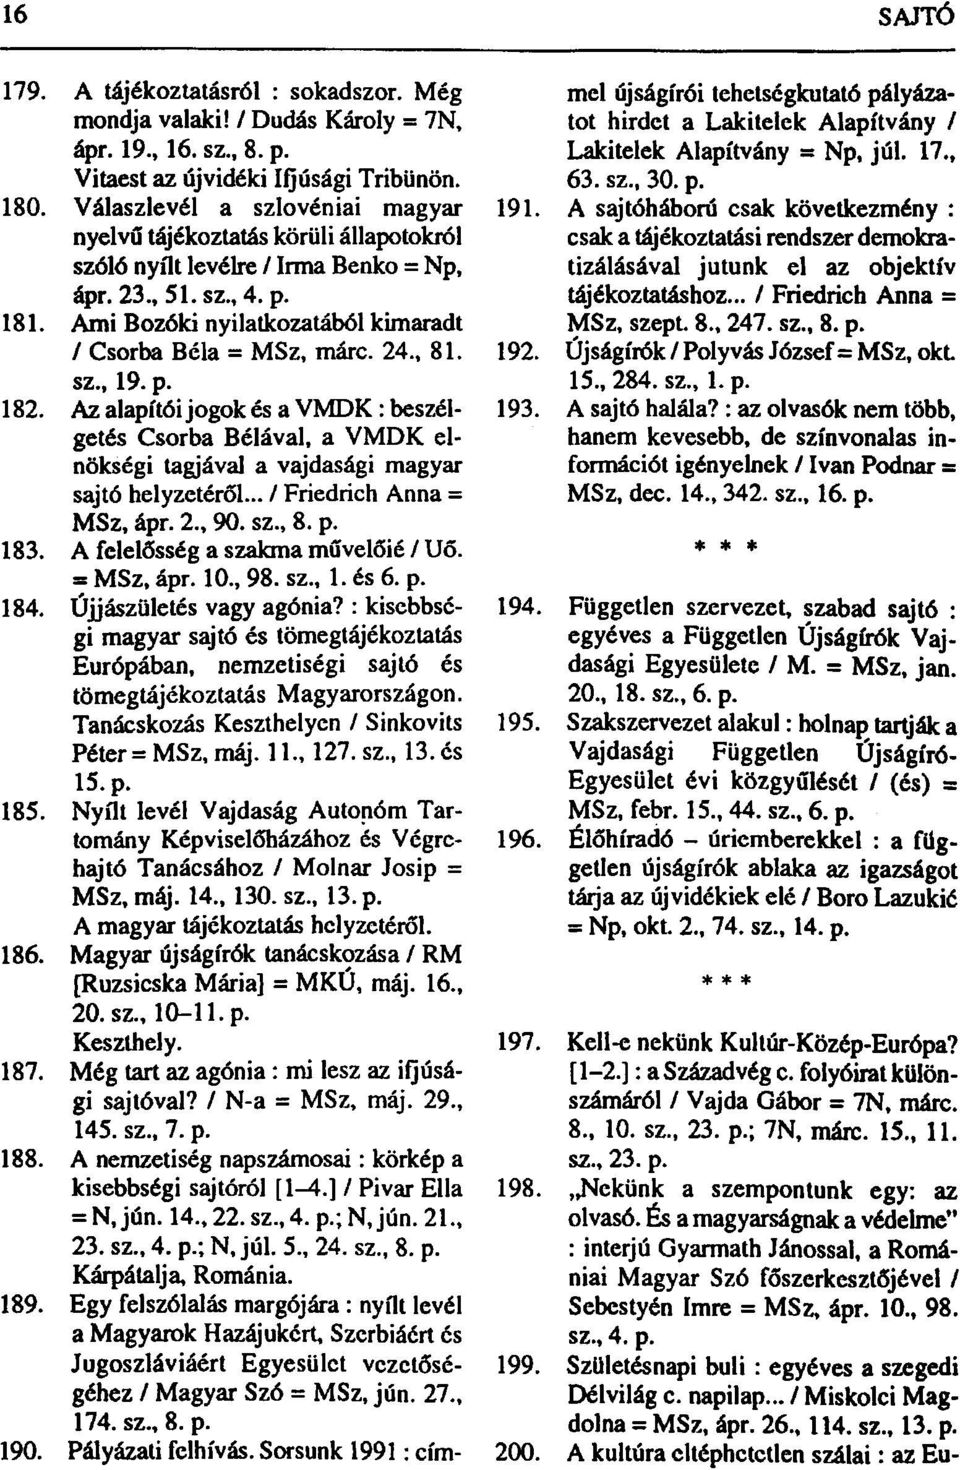 Ami Bozóki nyilatkozatából kimaradt / Csorba Béla = MSz, márc. 24., 81. sz., 19. p. 182.